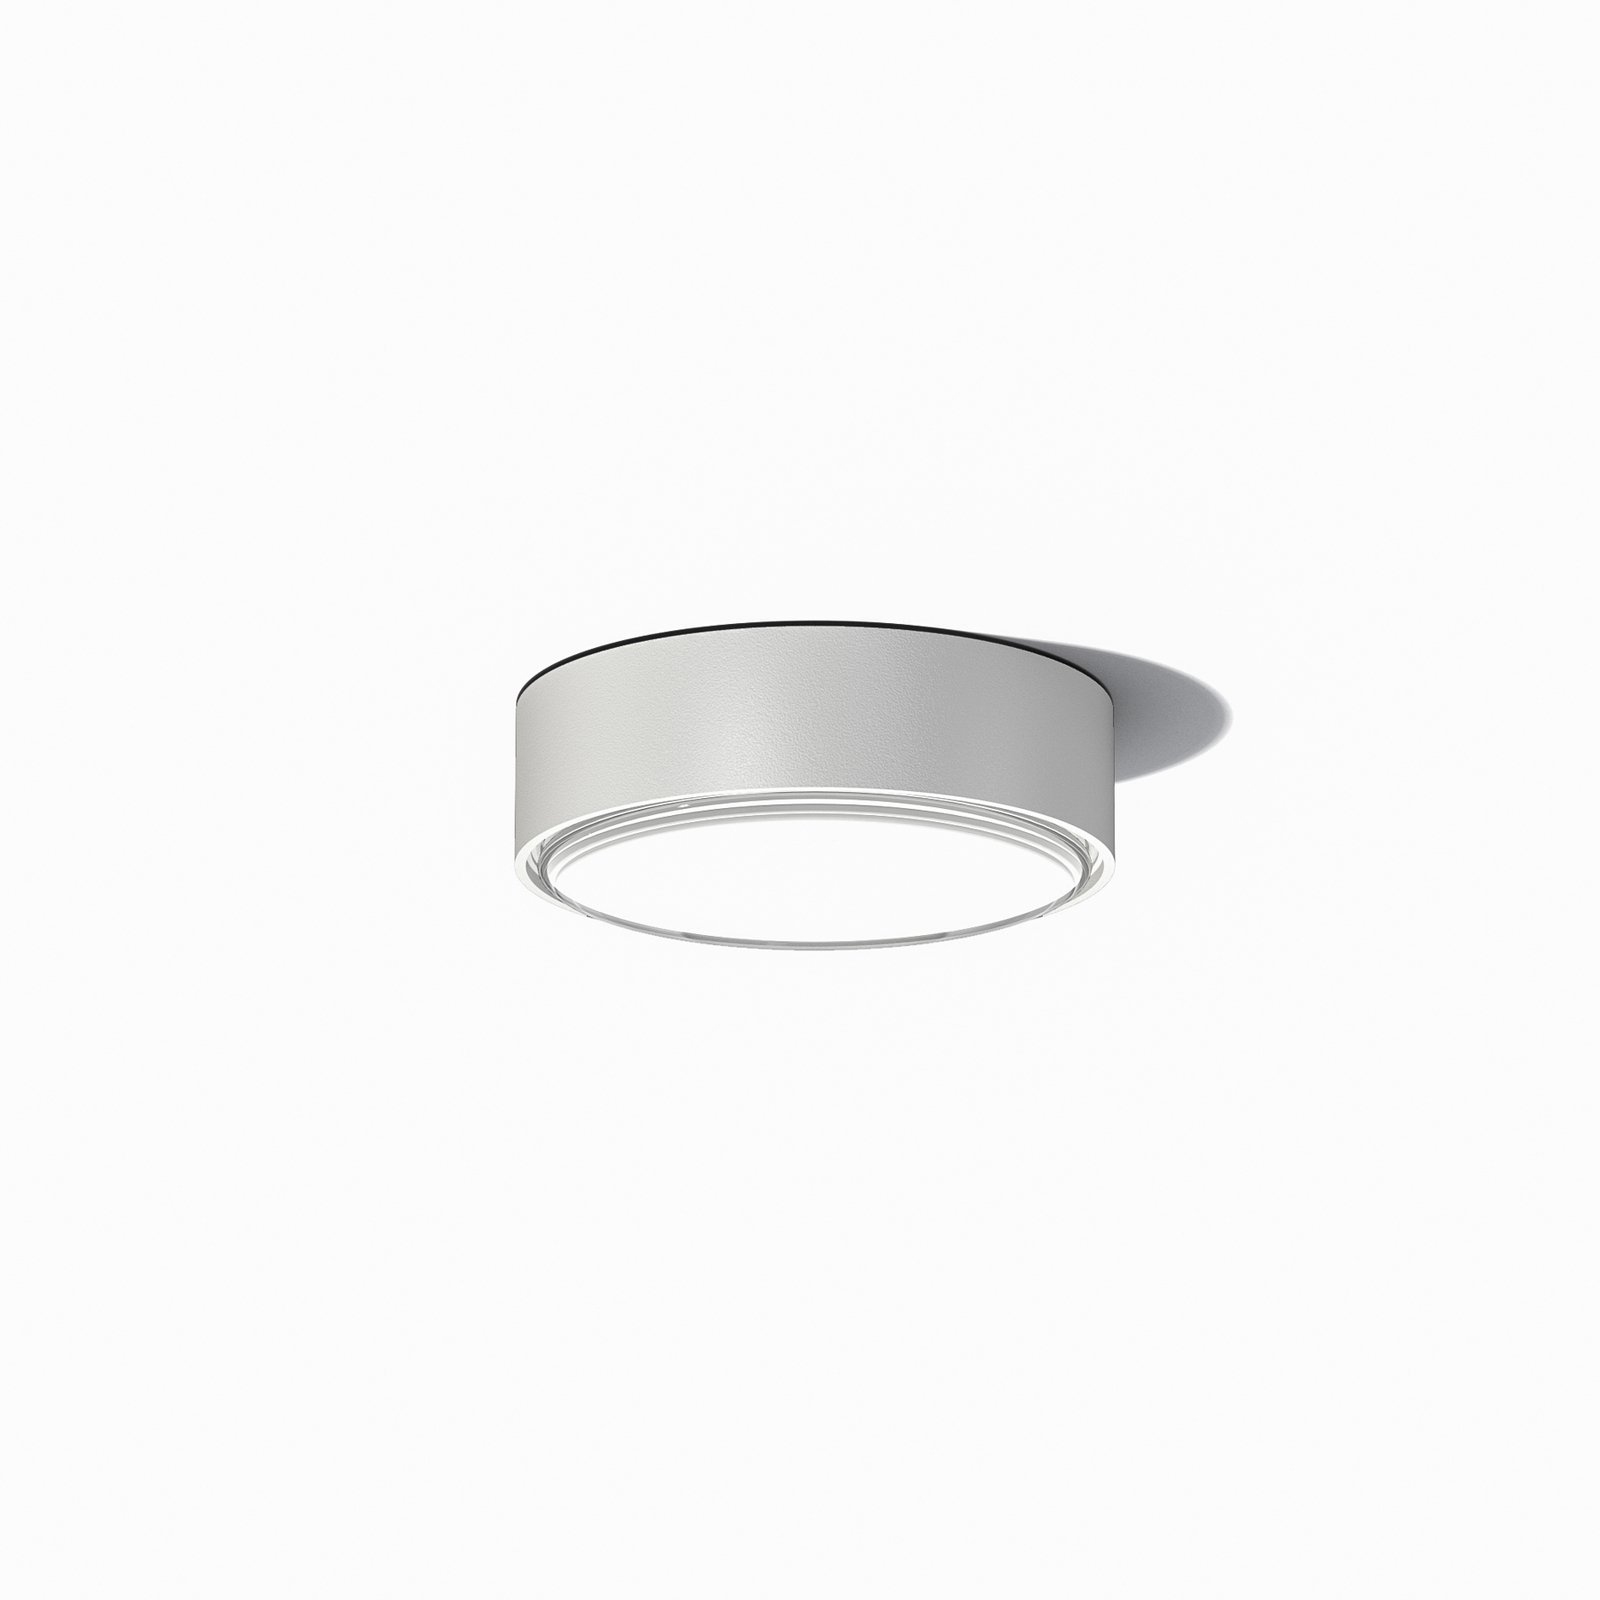 LOOM DESIGN Sif LED ceiling light IP65 white